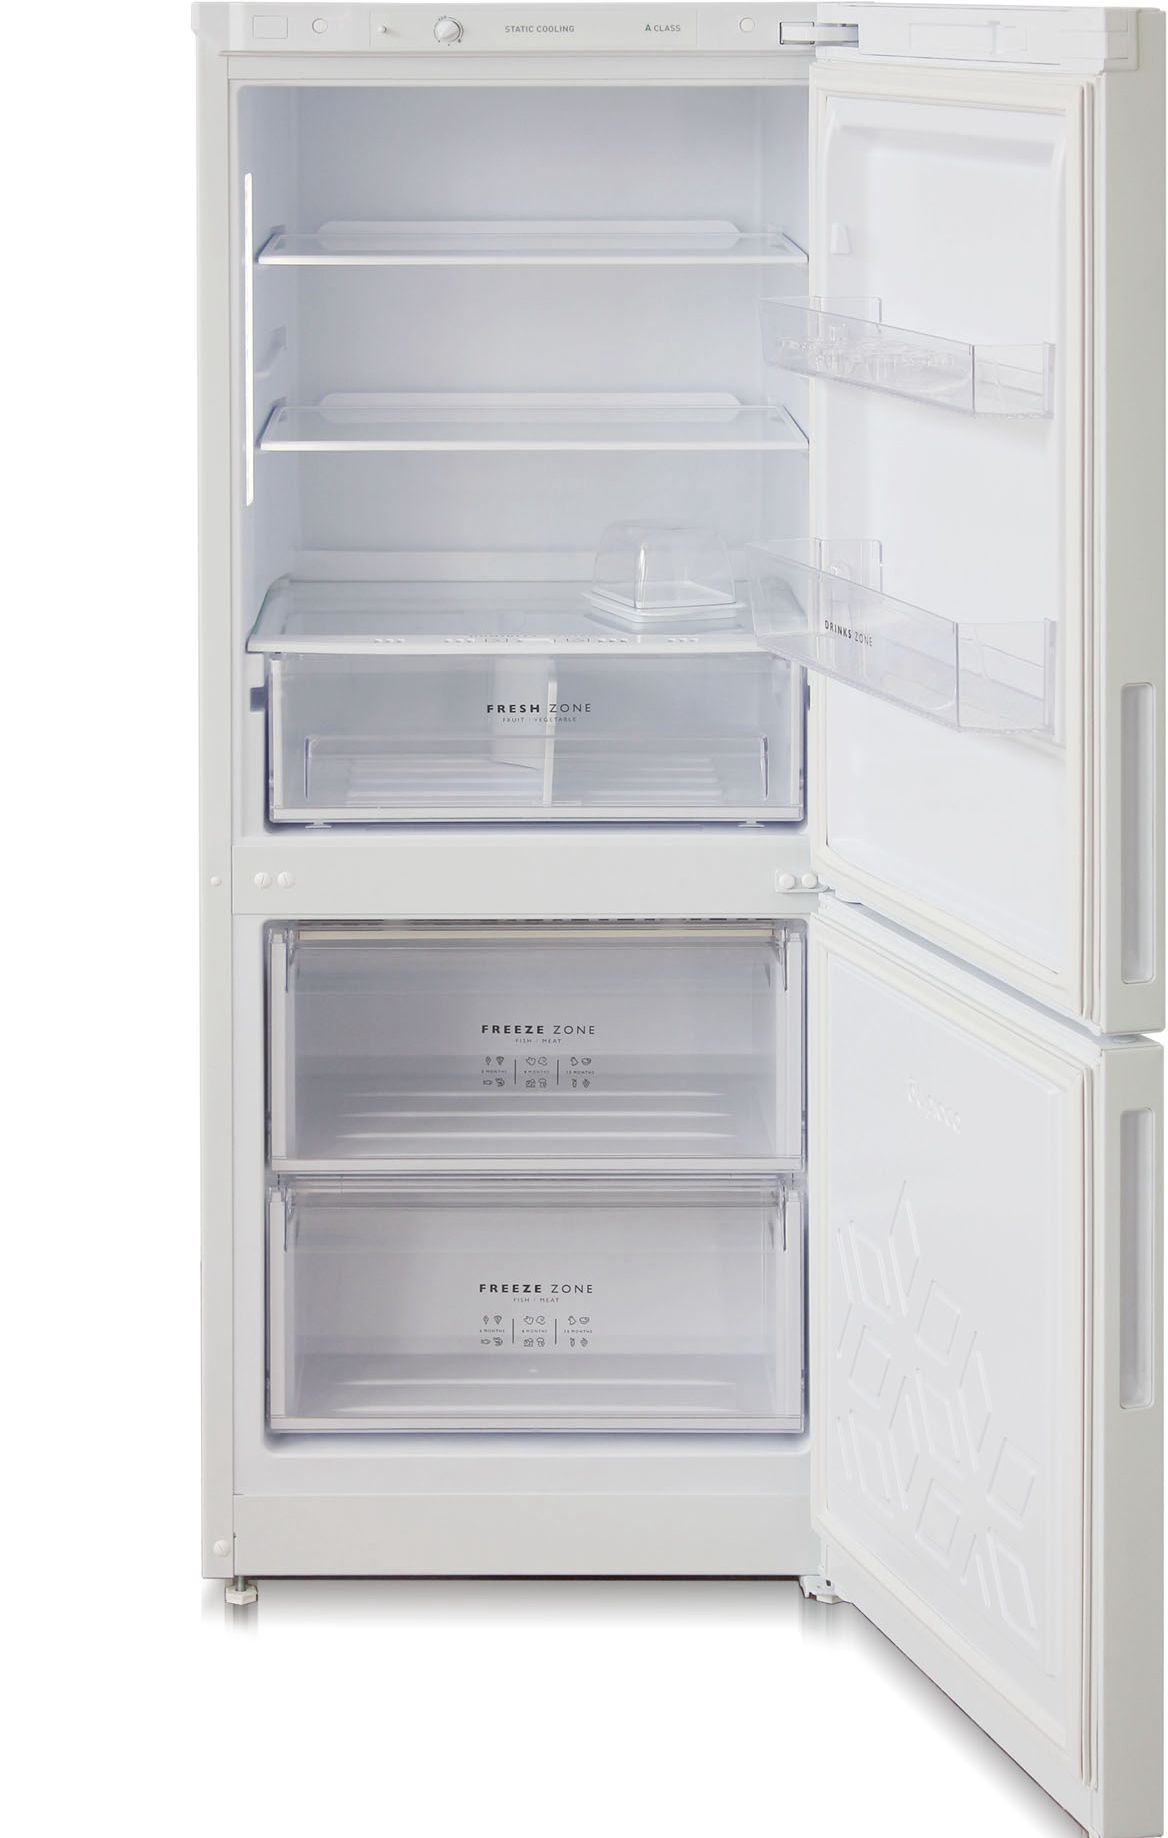 холодильник бирюса 6041, купить в Красноярске холодильник бирюса 6041,  купить в Красноярске дешево холодильник бирюса 6041, купить в Красноярске минимальной цене холодильник бирюса 6041